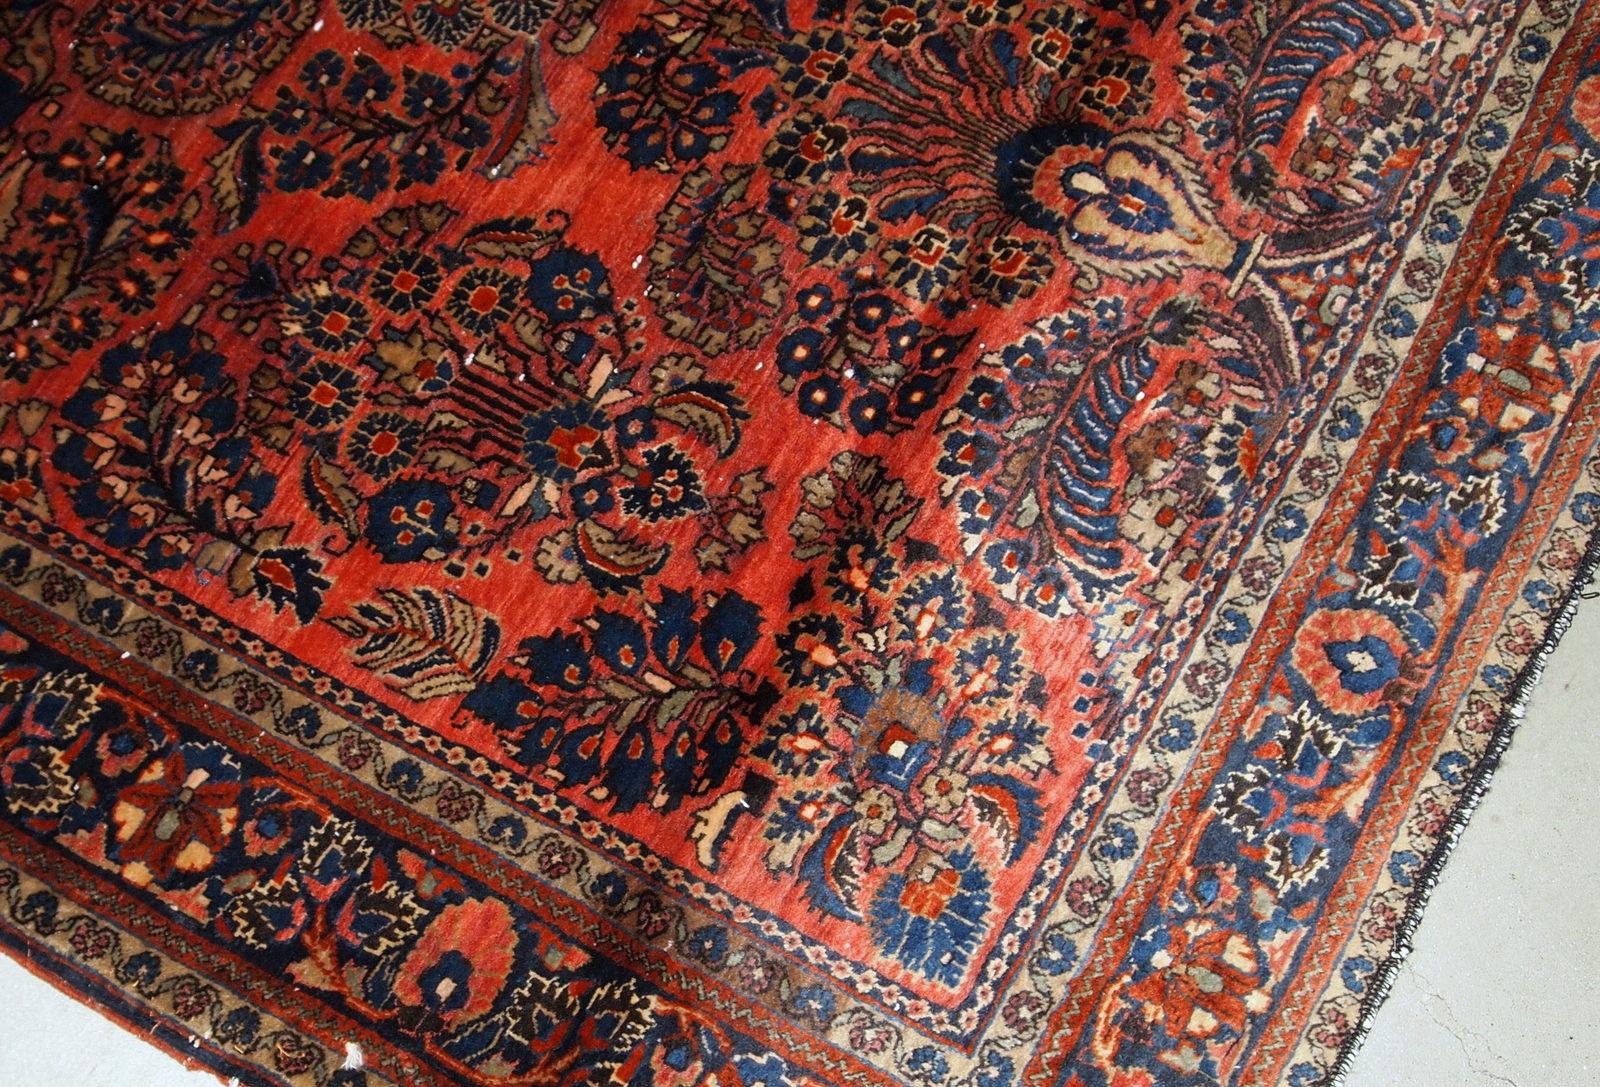 Handgefertigter antiker Sarouk-Teppich in gutem Originalzustand. Der Teppich wurde zu Beginn des 20. Jahrhunderts aus roter Wolle hergestellt.

?-Zustand: original gut,

-um: 1920er Jahre,

-Größe: 4' x 6,4' (122 cm x 195 cm),

-Material: